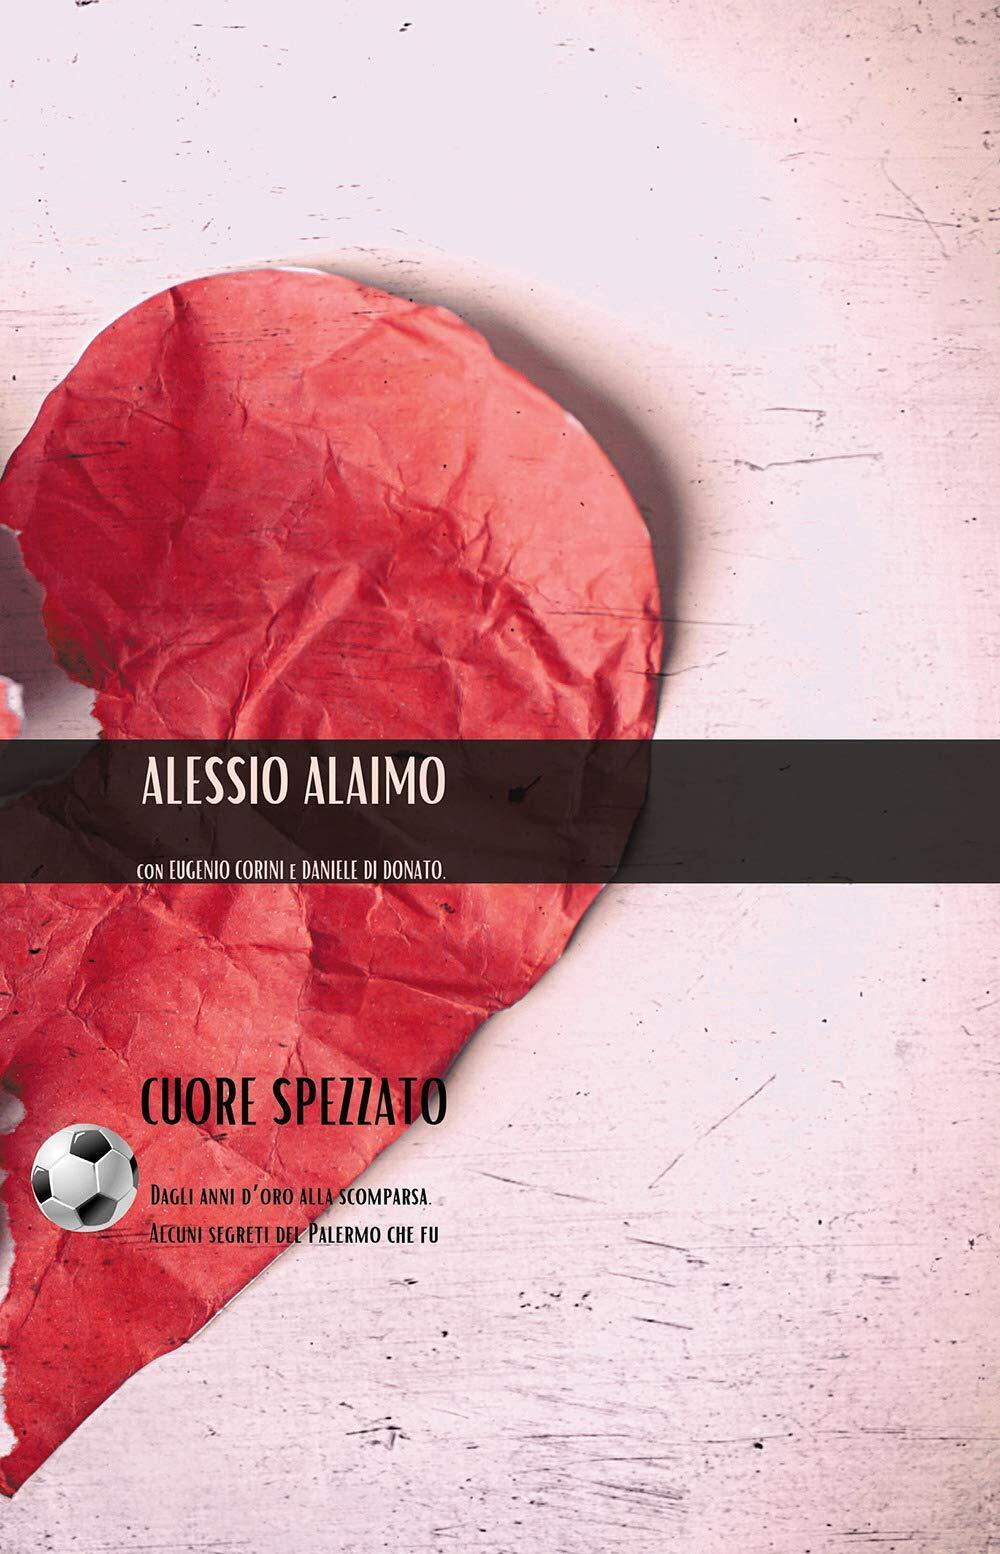 cuore spezzato - Alessio Alaimo - Passione Scrittore selfpublishing, 2020 libro usato